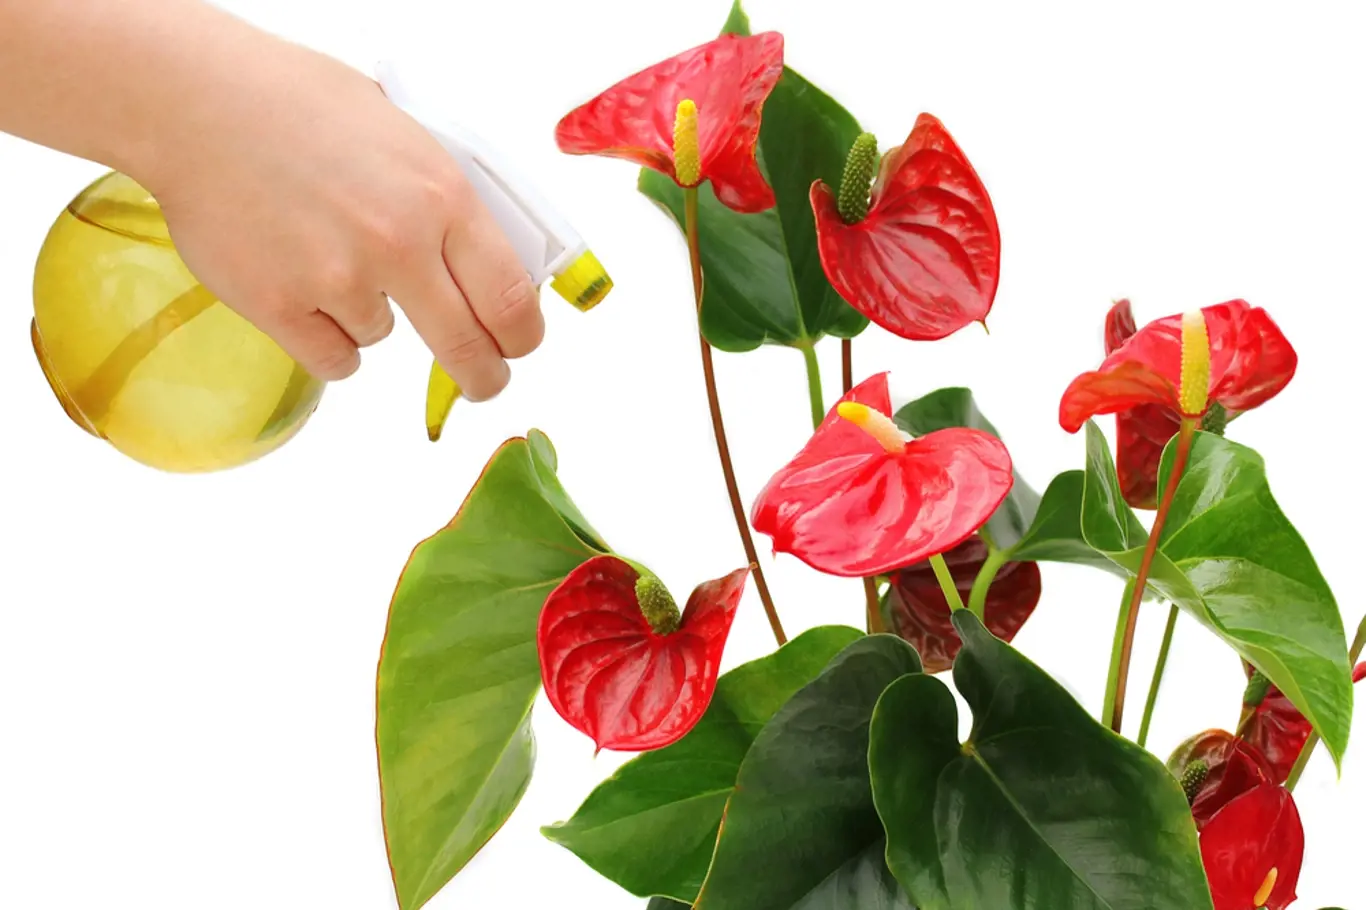 Toulitka patří mezi rostliny, kterým mlžení listů velmi prospívá.